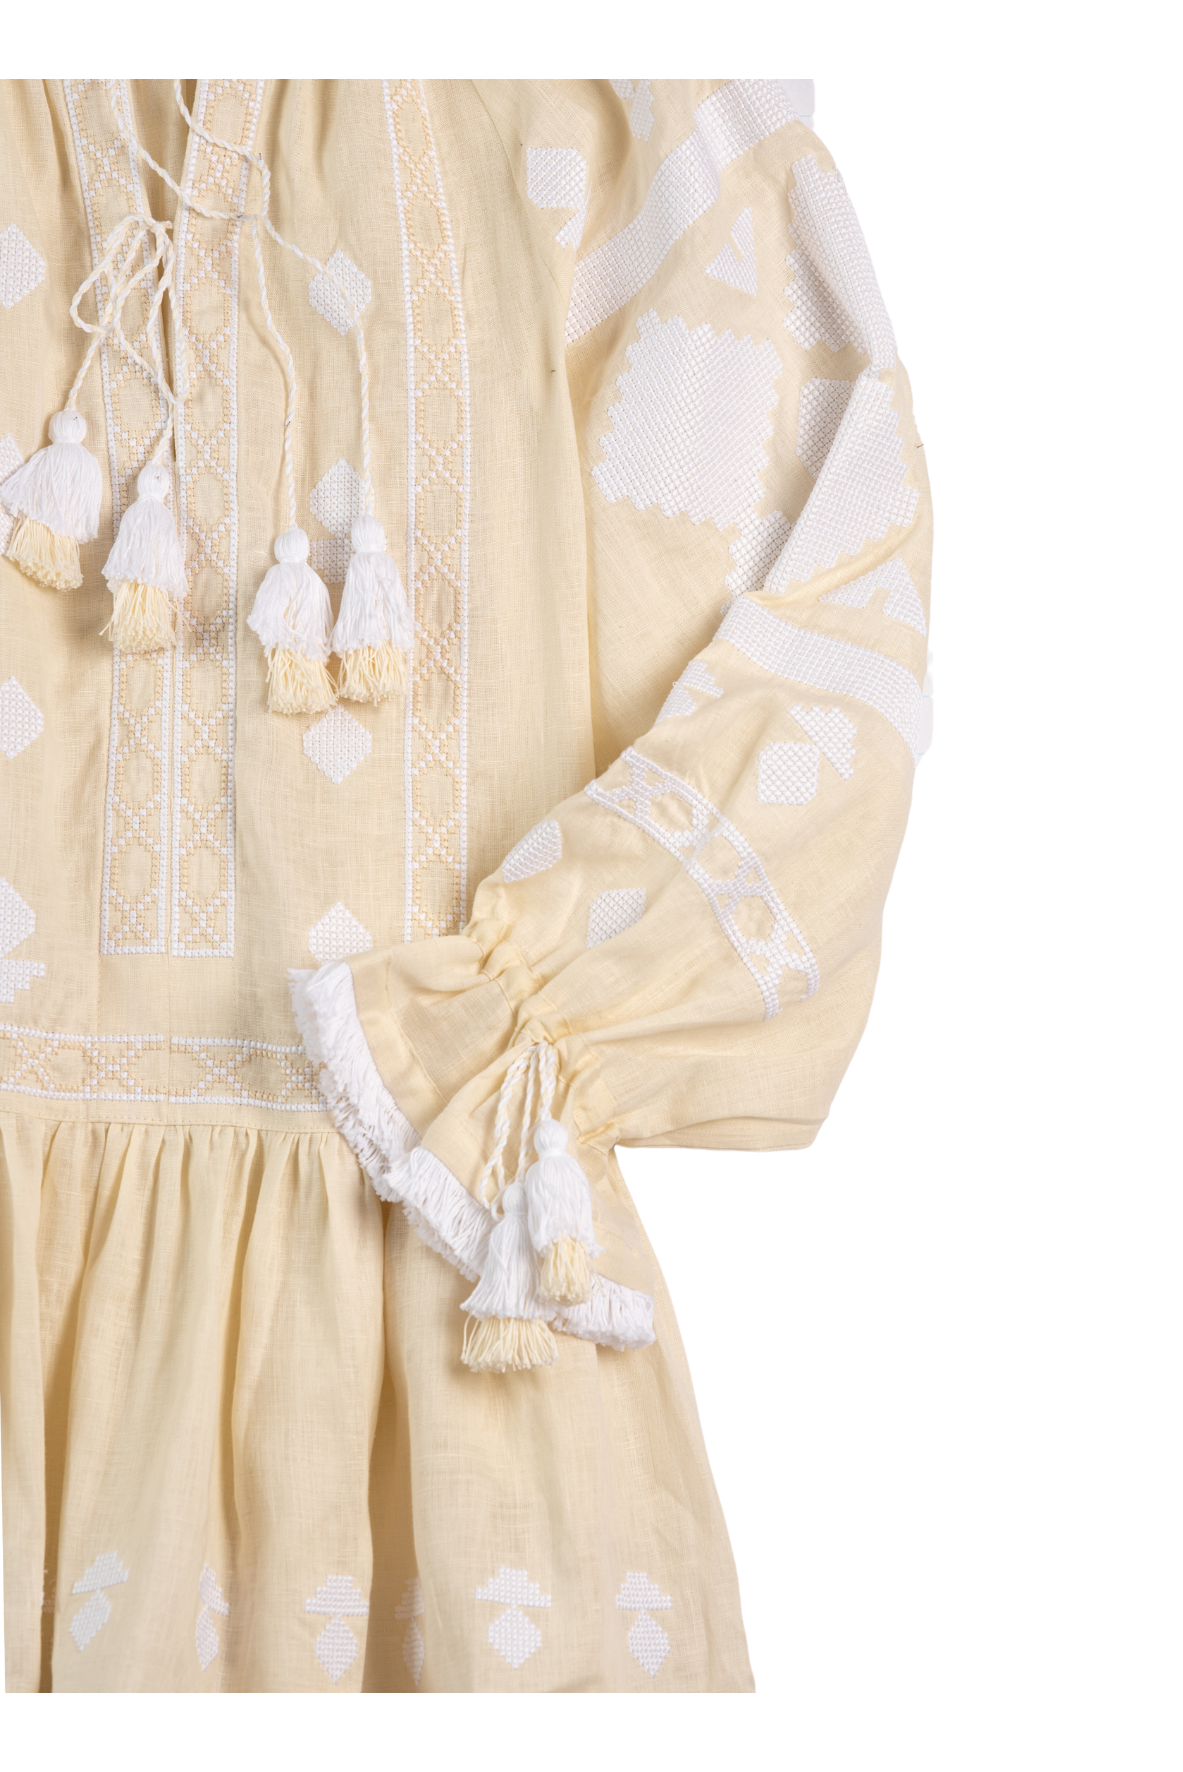 Nomeda Embroidered Ukrainian Dress - Ivory, White